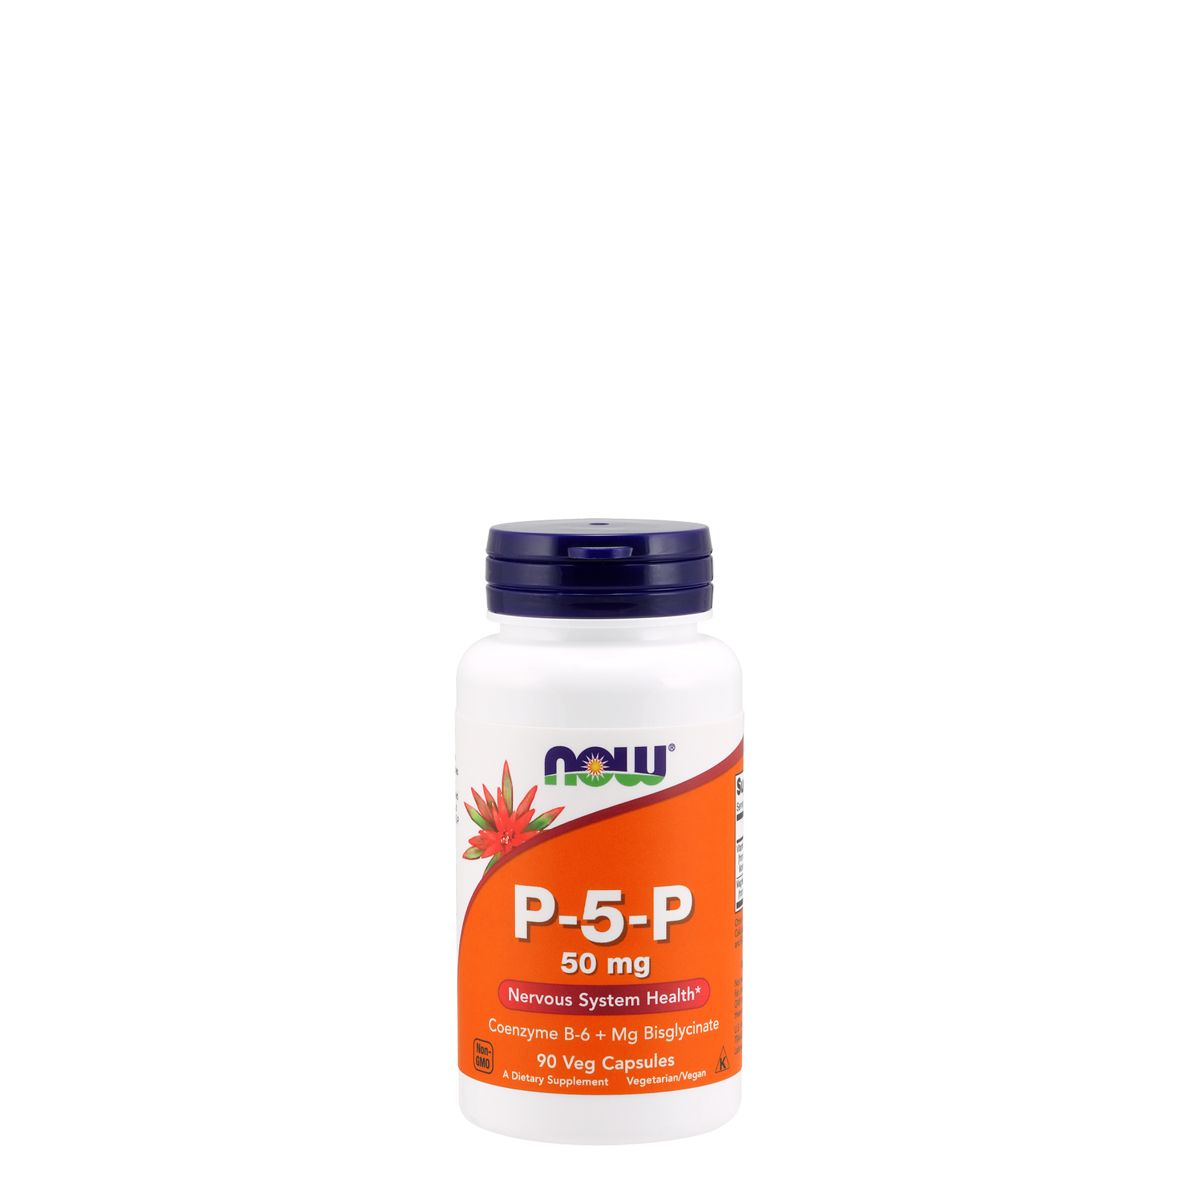 Piridoxál-foszfát 50 mg, Now P-5-P, 90 kapszula